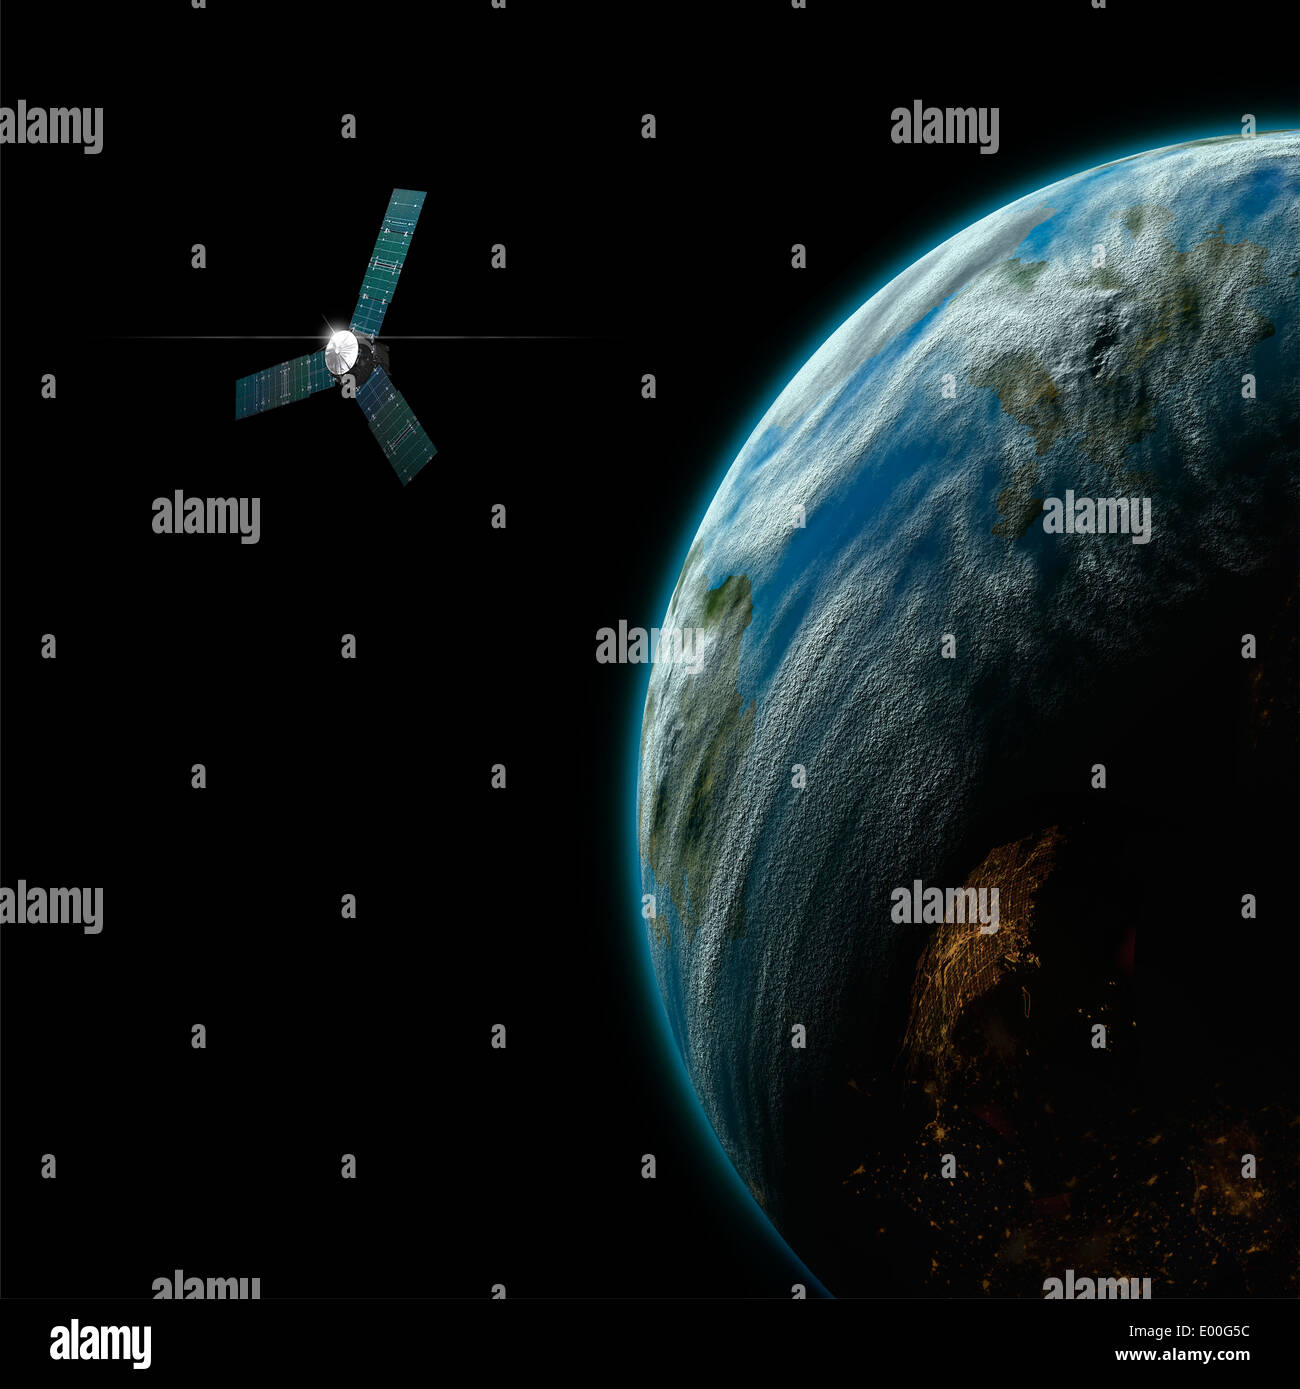 Un artista della raffigurazione di un satellite in orbita intorno a una massa simile a un mondo abitato. Alcuni componenti di Immagine cortesia della NASA. Foto Stock